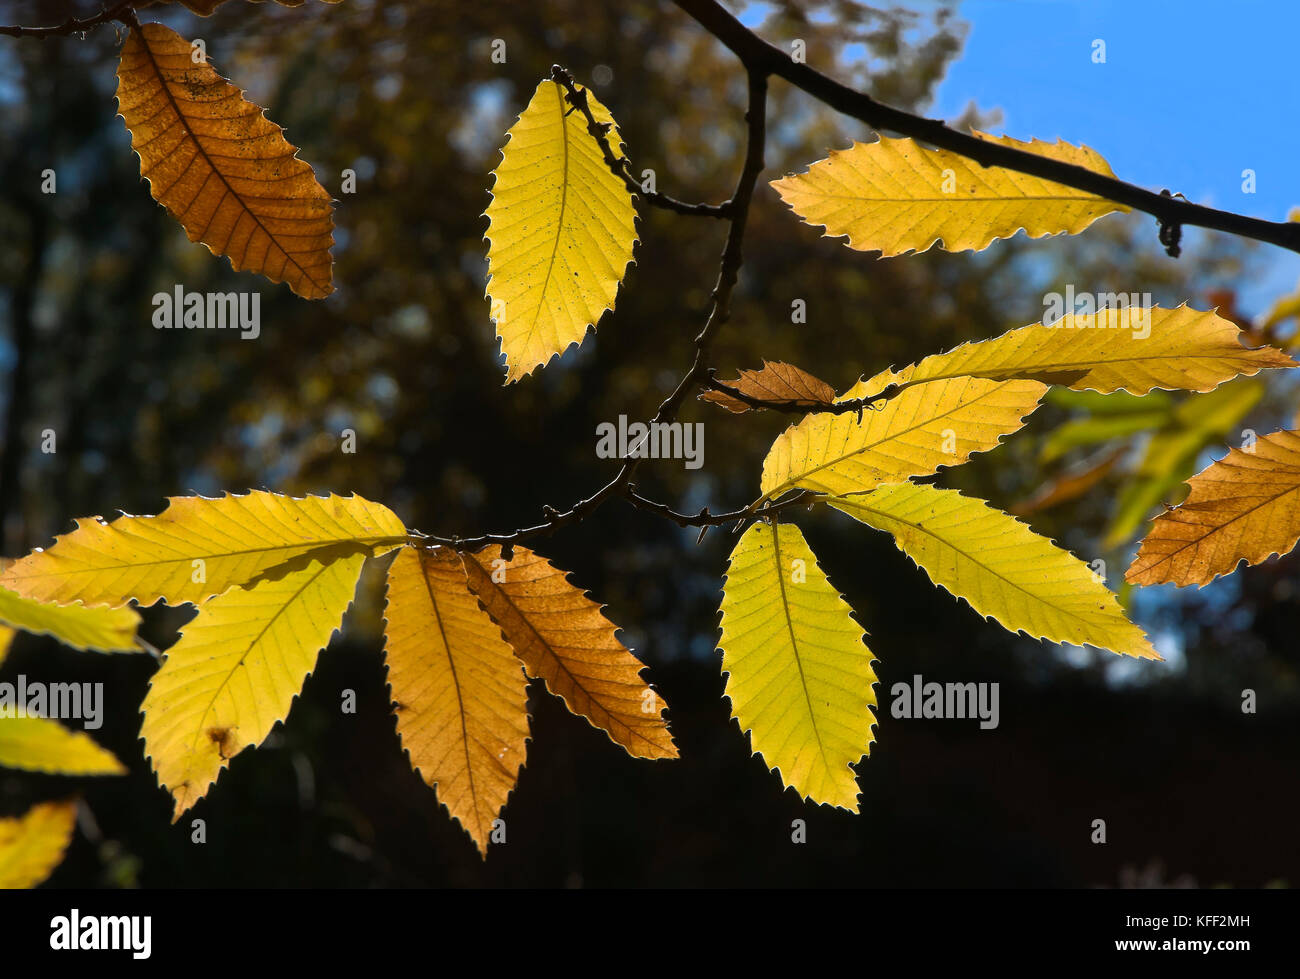 Châtaignes en automne - les feuilles, aracena, parc naturel de la Sierra de Aracena y Picos de Aroche, province de Huelva, Andalousie, Espagne, Europe Banque D'Images